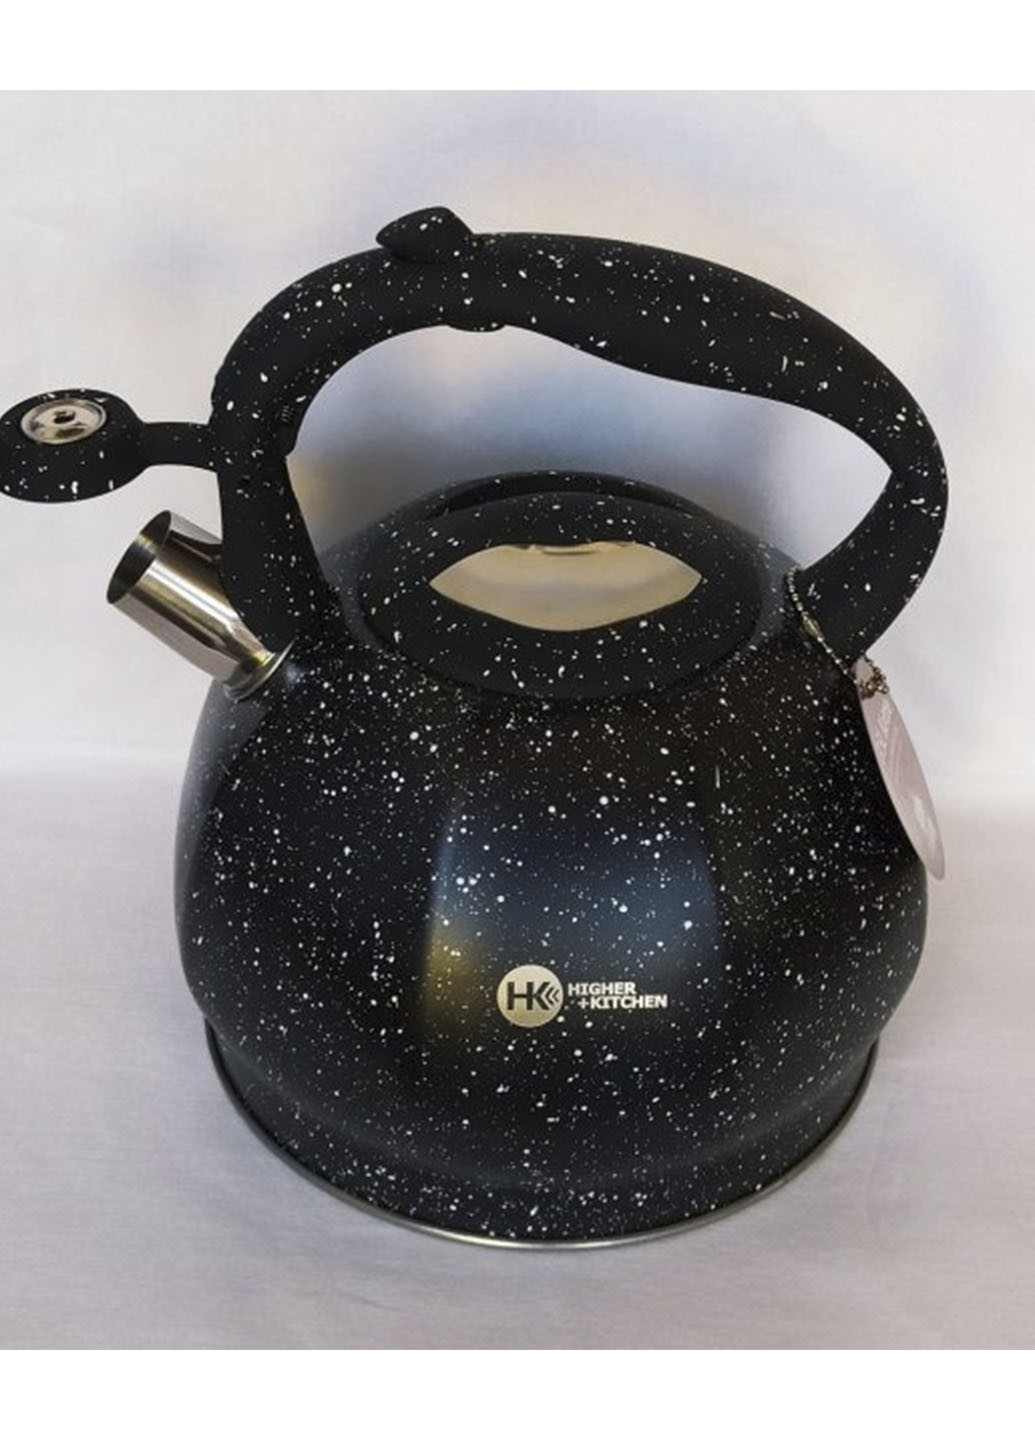 Чайник со свистком HIGHER+KITCHEN ZP-020 двойное дно из нержавеющей стали 3,5 л XO однотонный чёрный